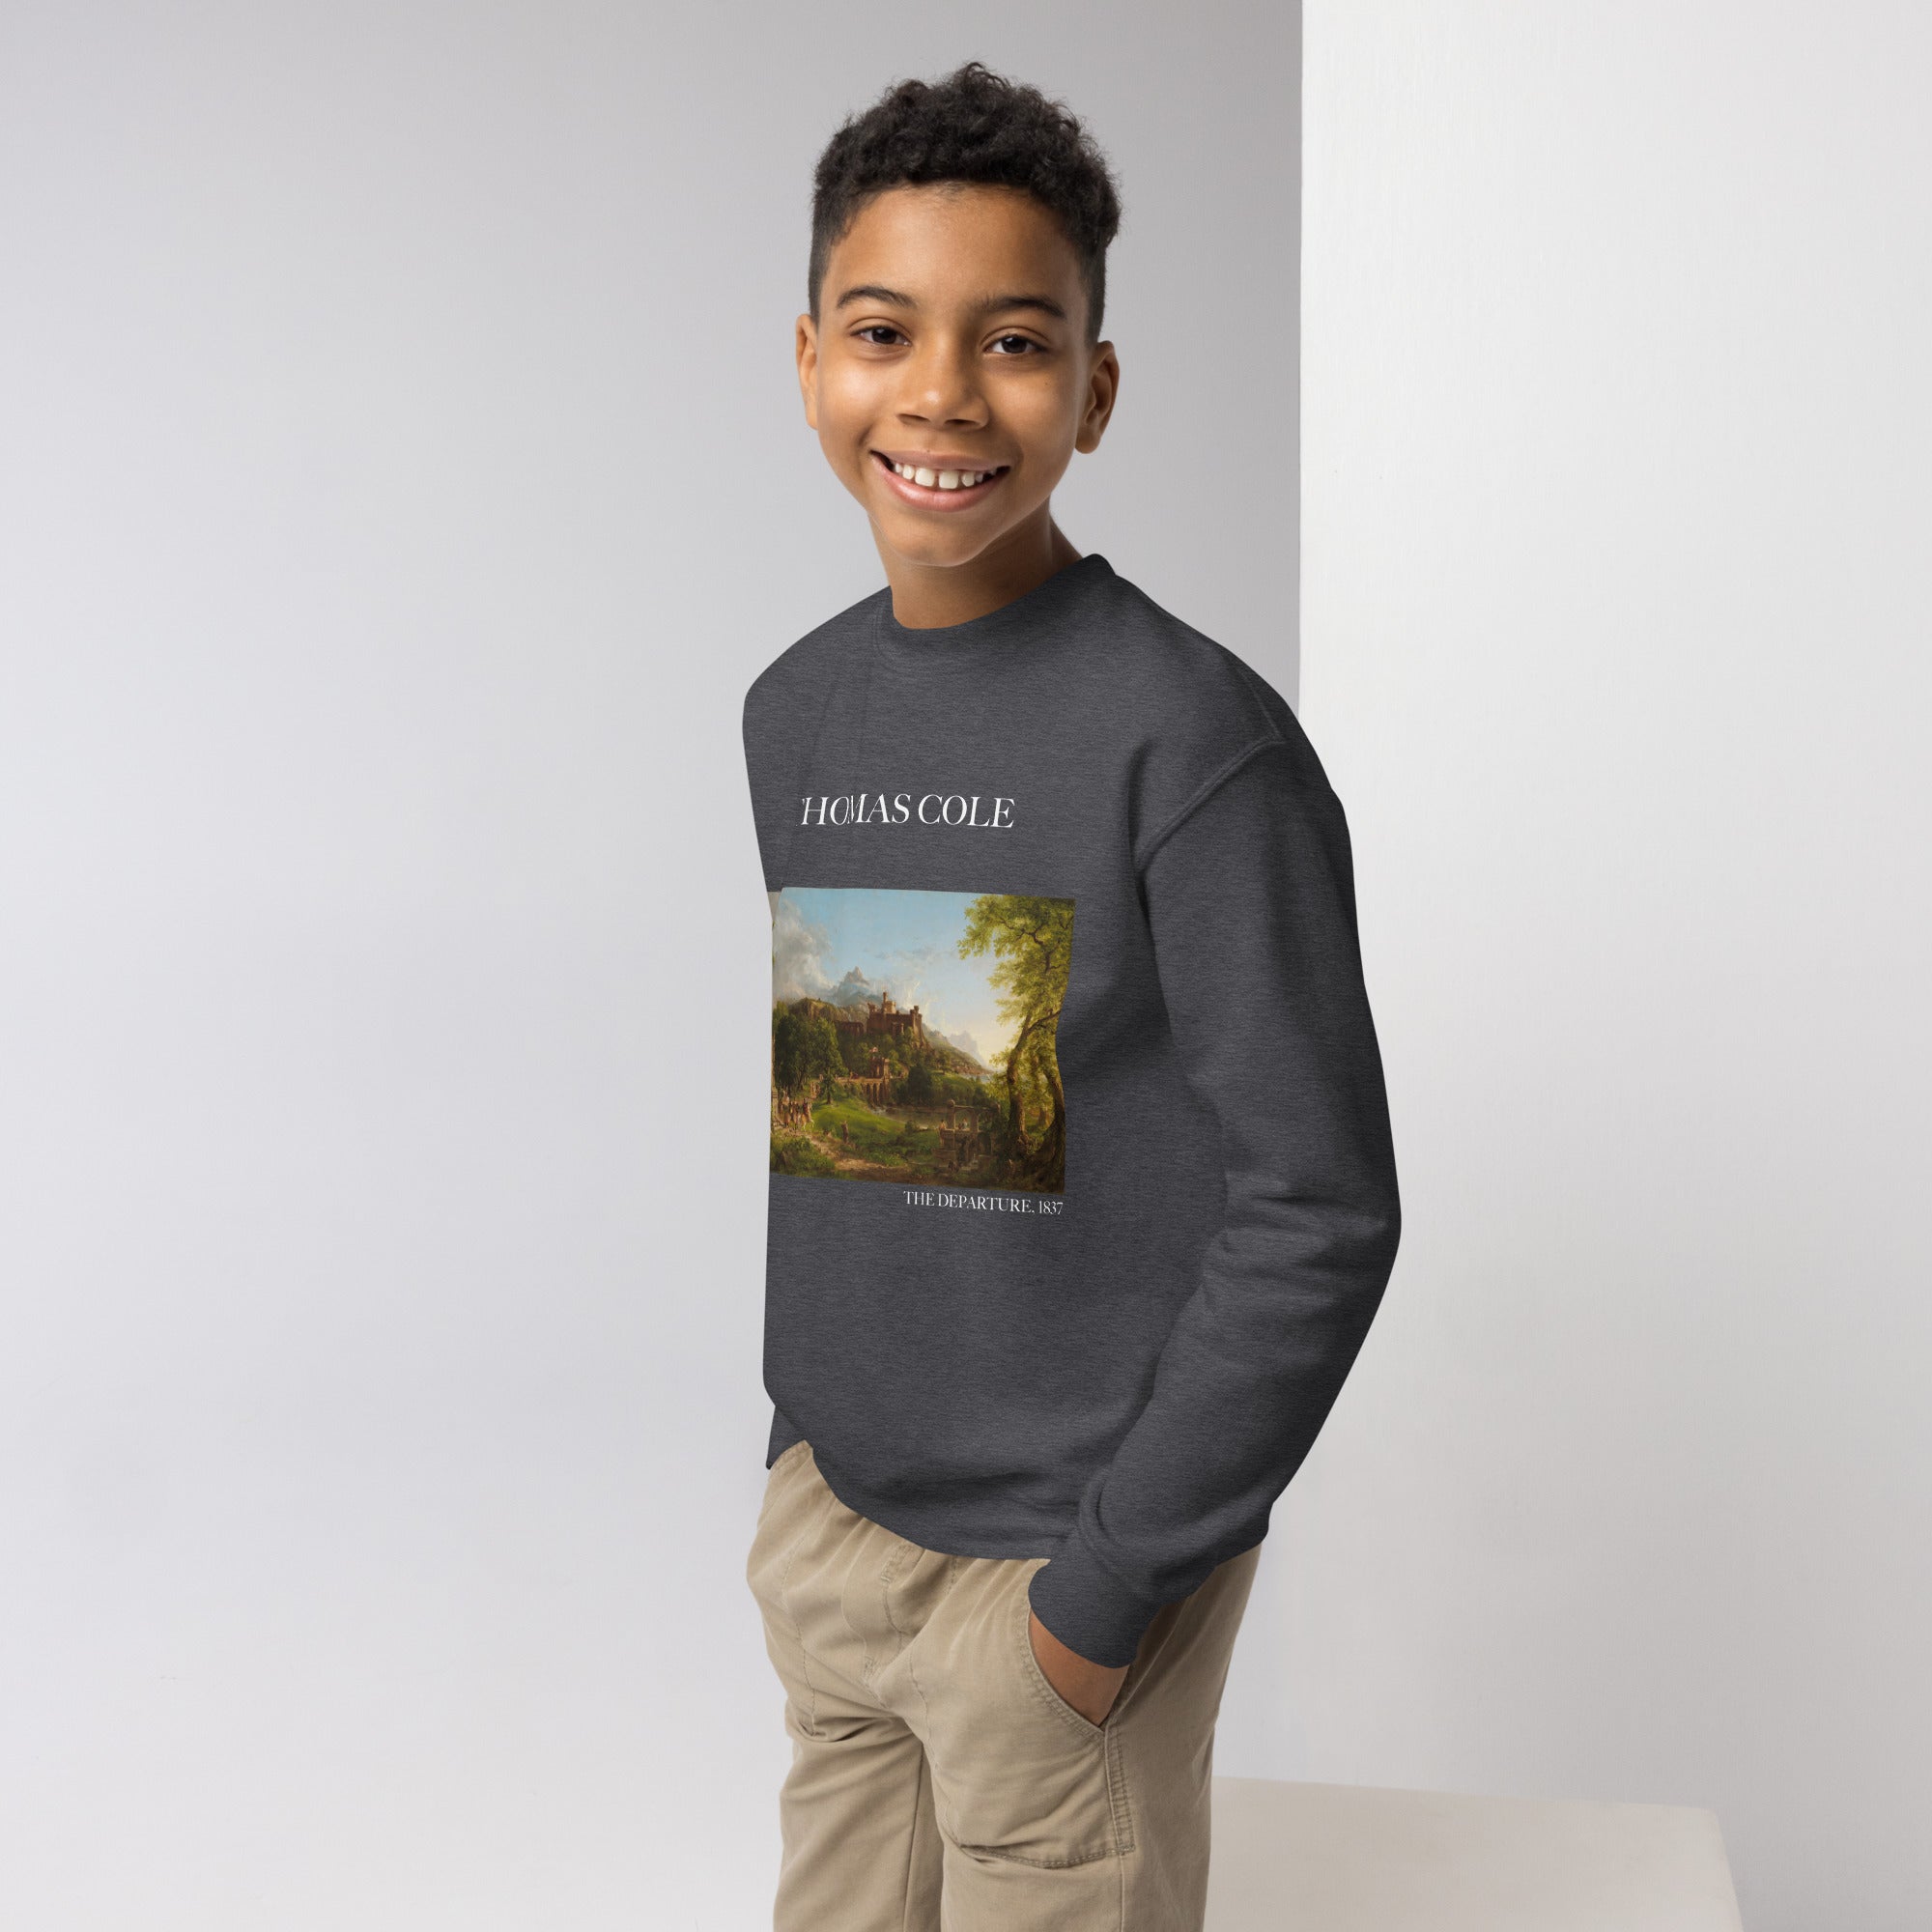 Thomas Cole – Rundhals-Sweatshirt mit berühmtem Gemälde „The Departure“ | Premium-Kunst-Sweatshirt für Jugendliche